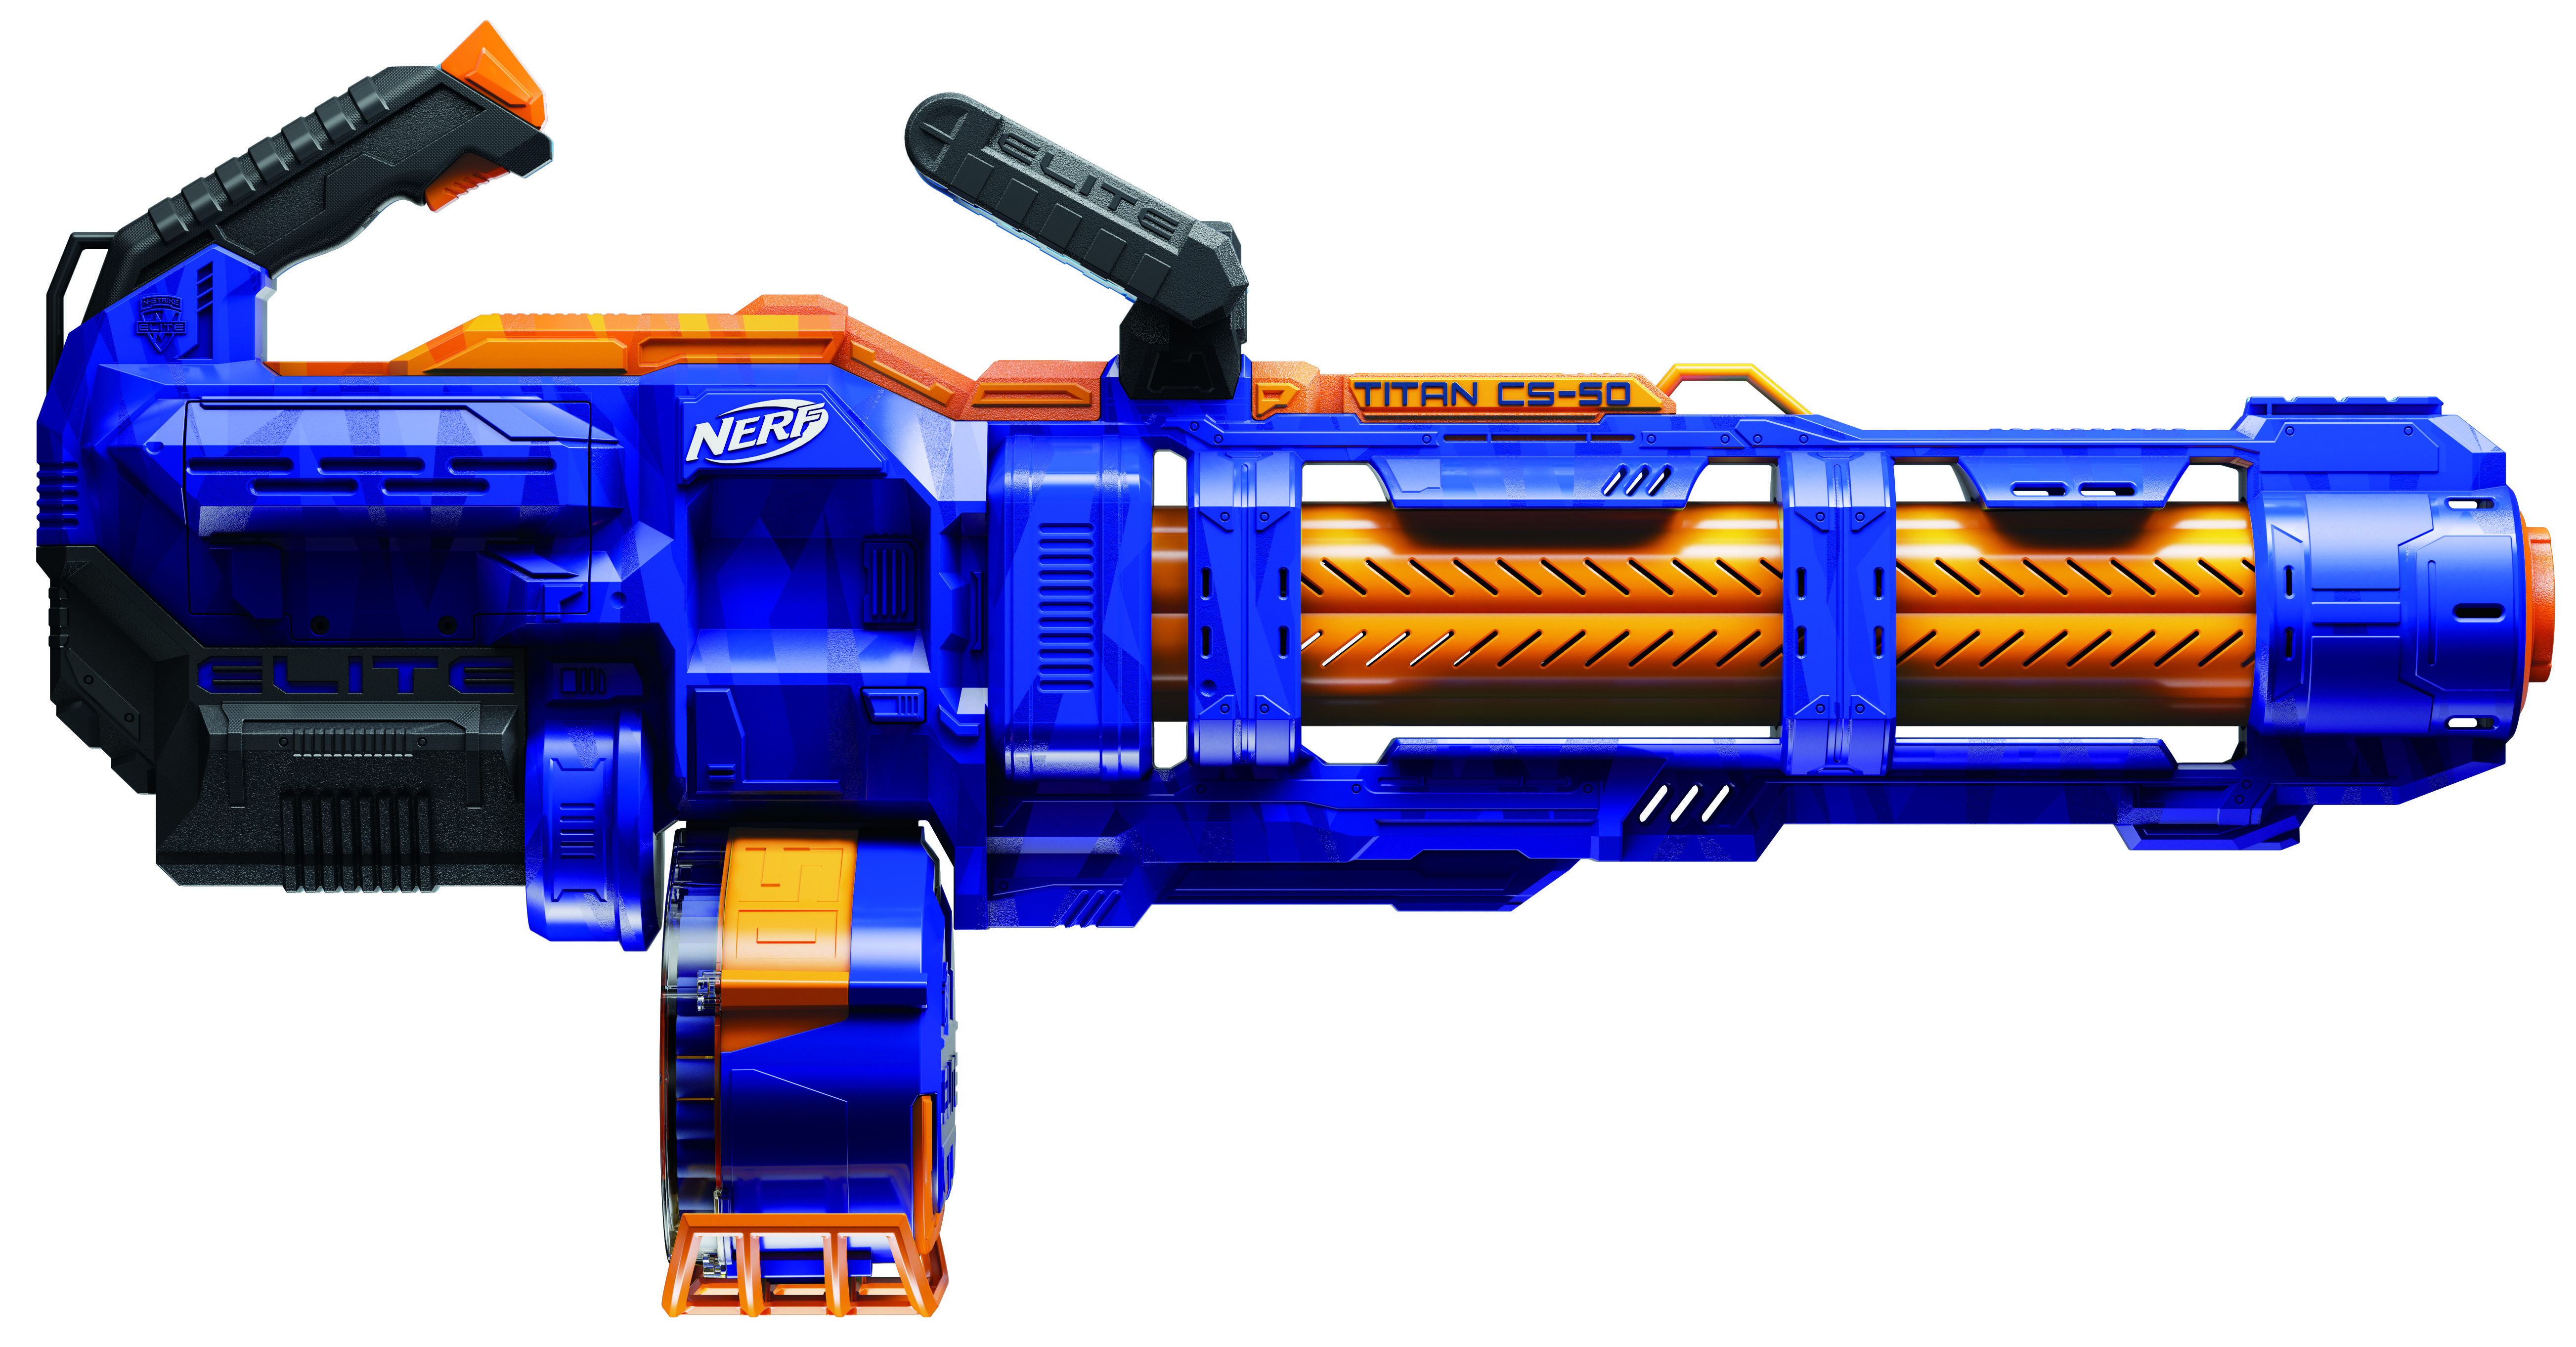 NERF Mini gun